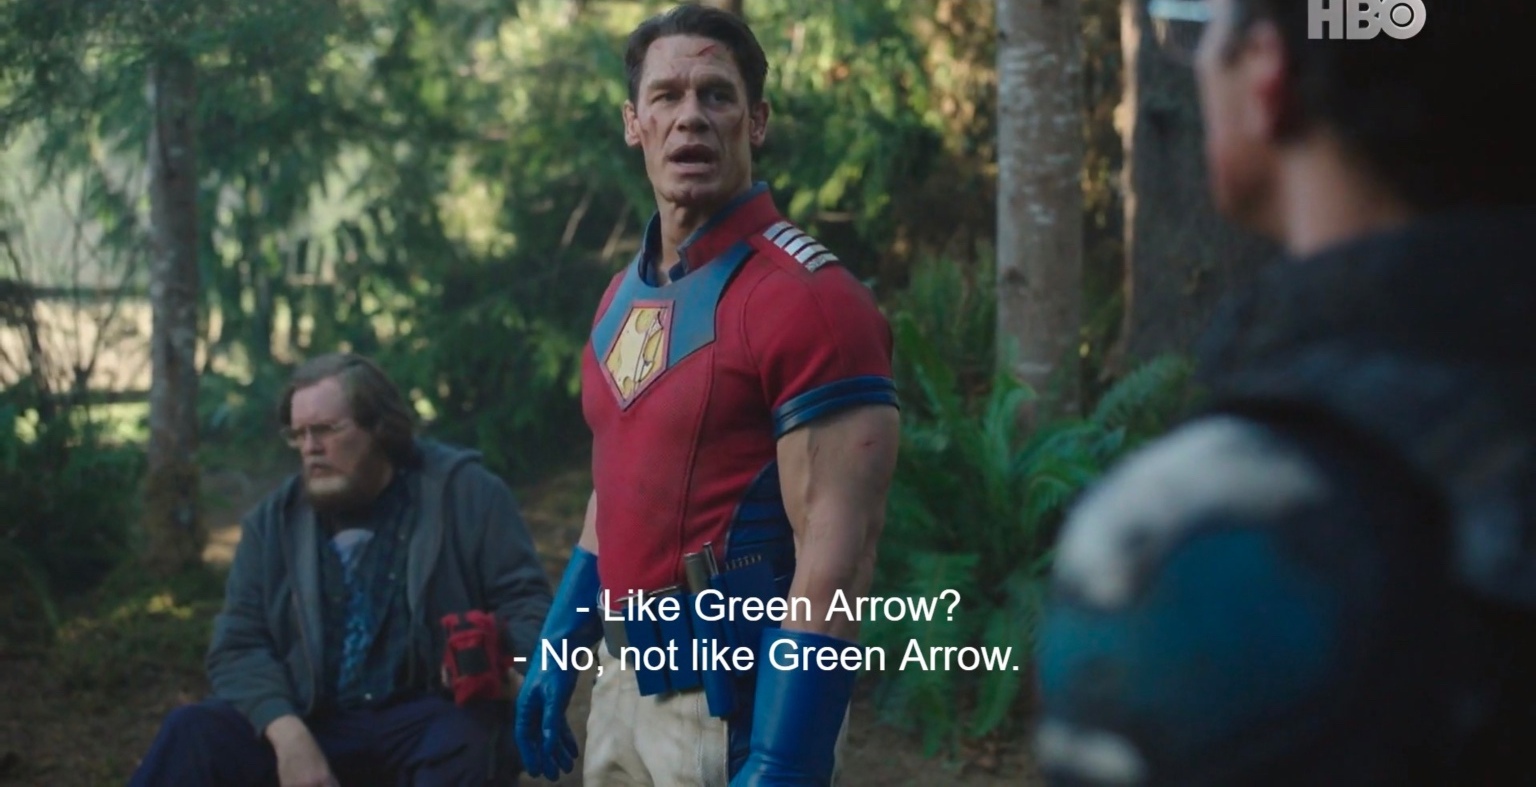 Подтверждено, что Зеленая стрела существует в киновселенной DC